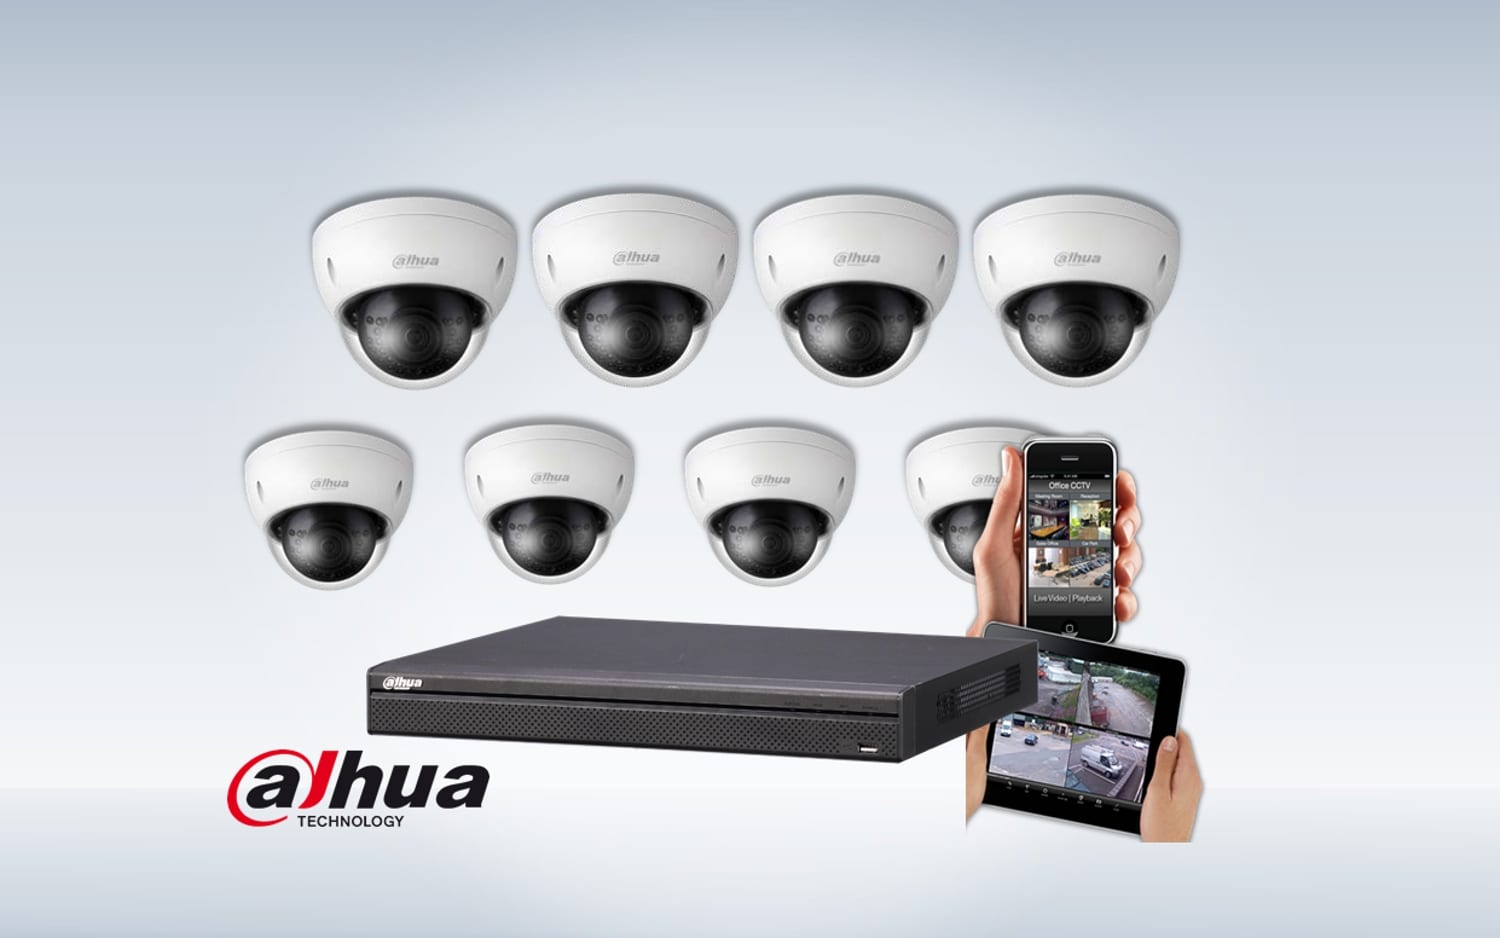 Camerabeveiliging - camerabewaking - productbeveiliging - winkelbeveiliging - camera - veiligheid - security - cctv